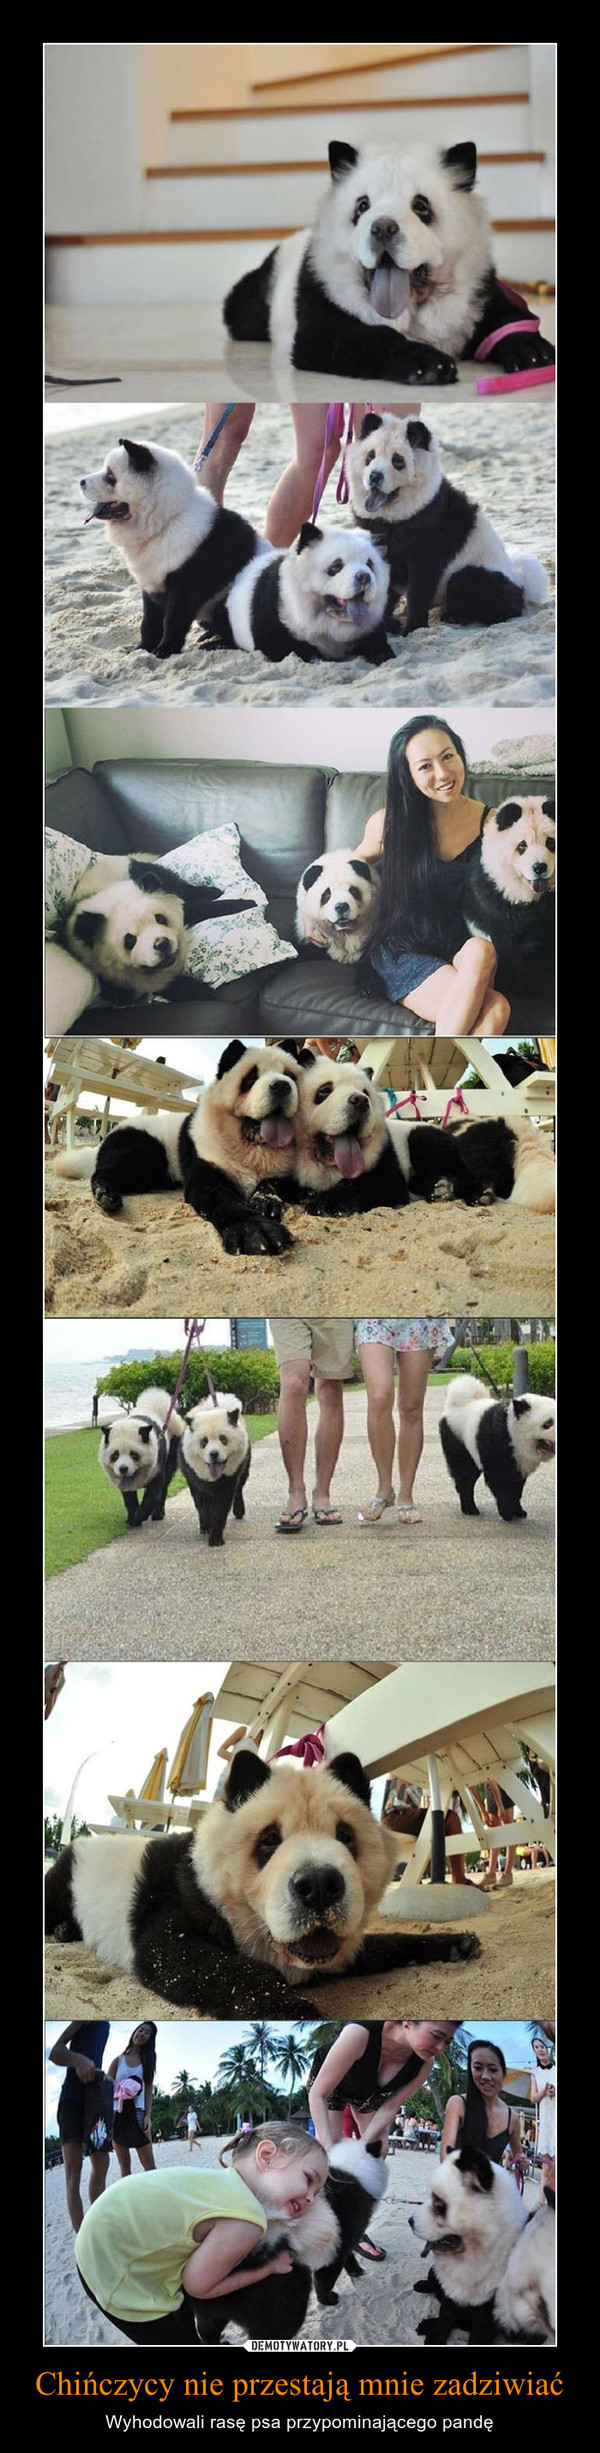 Chińczycy nie przestają mnie zadziwiać – Wyhodowali rasę psa przypominającego pandę 